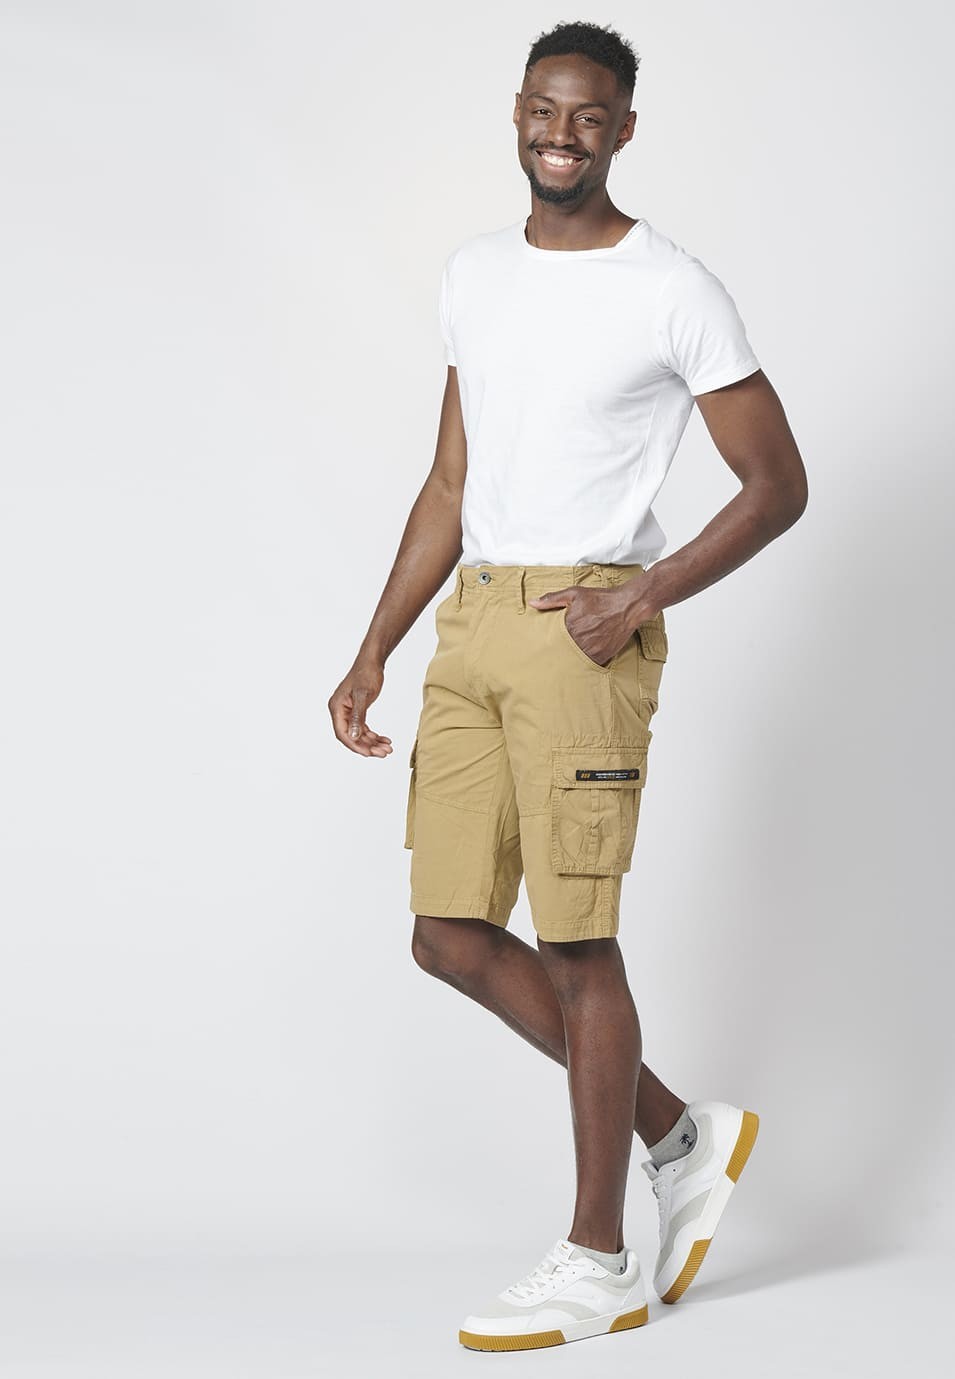 Bermuda pantalón corto estilo cargo para hombre con seis bolsillos 1